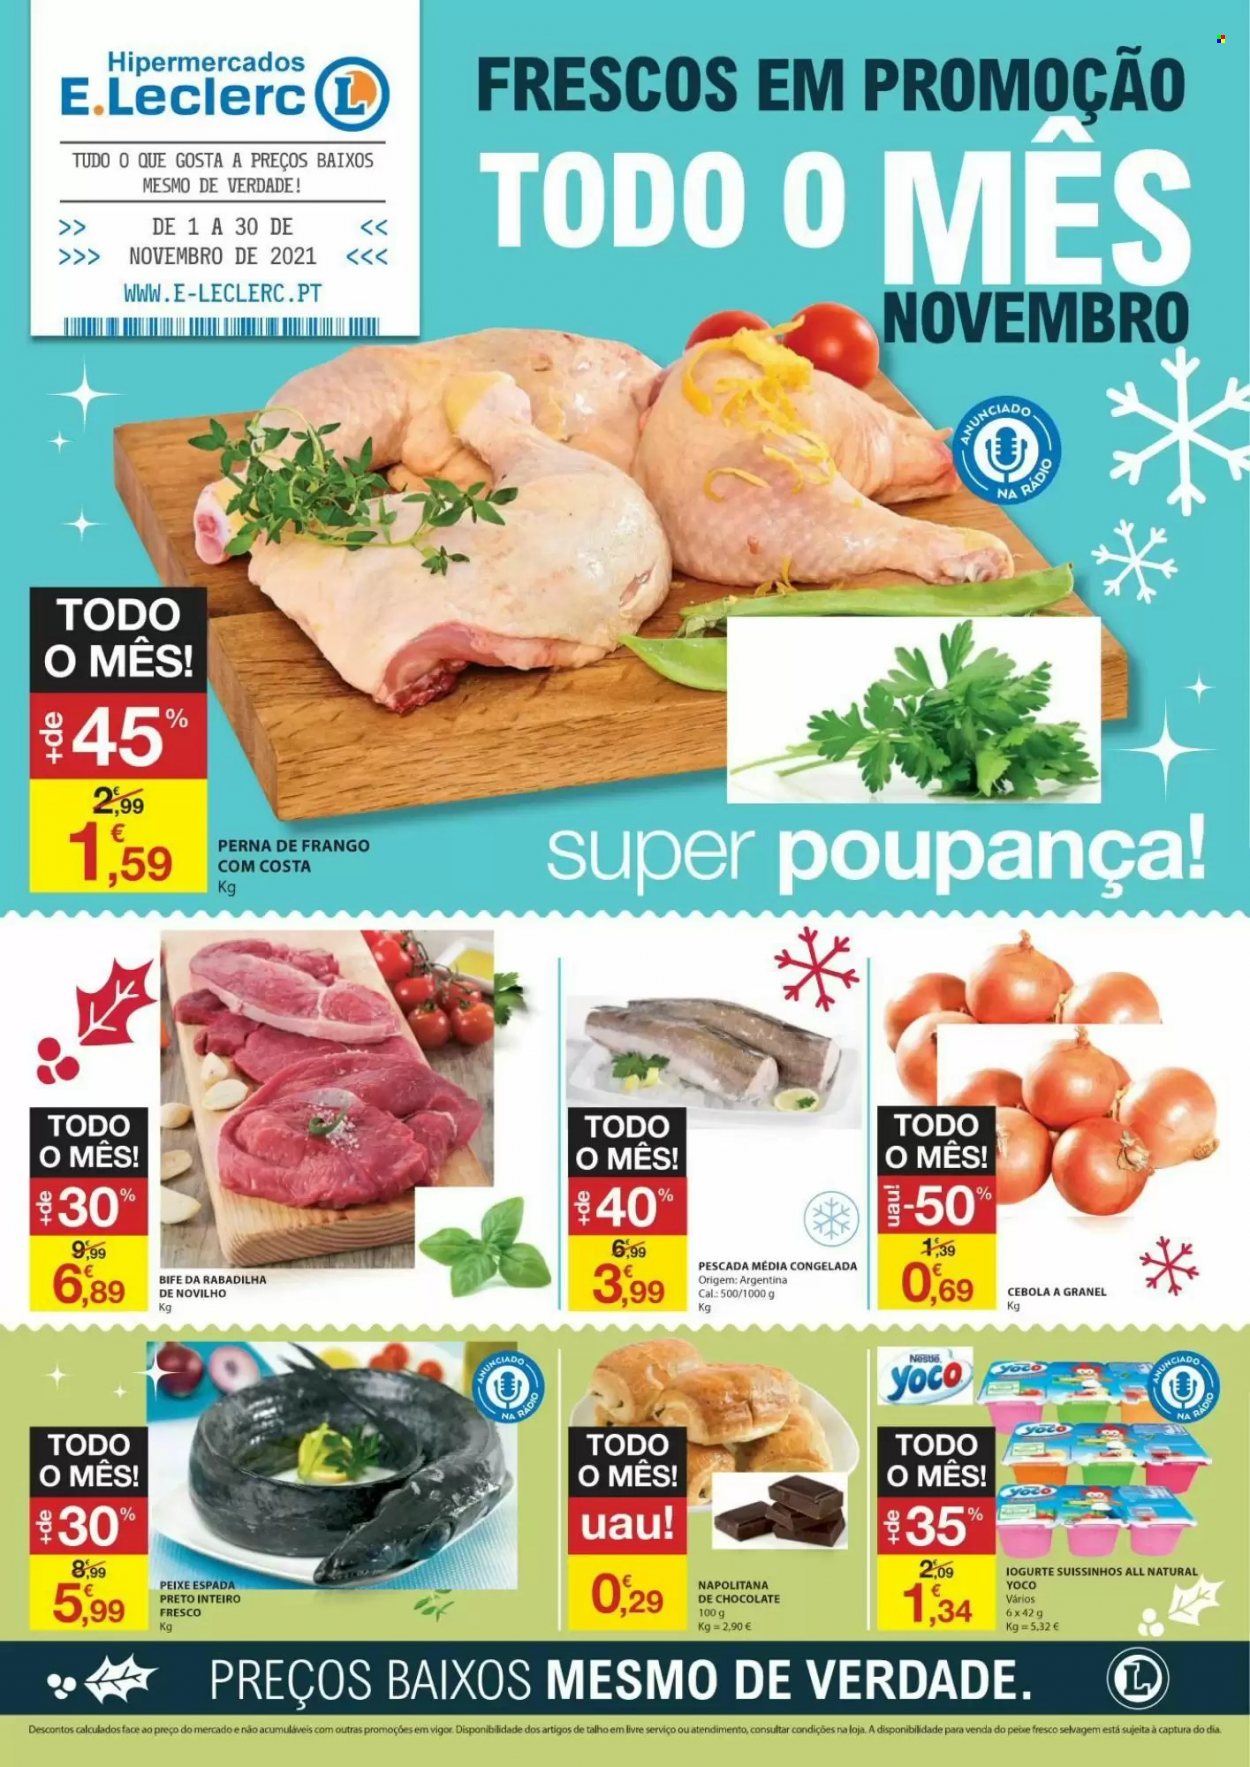 thumbnail - Folheto E.Leclerc - 1.11.2021 - 30.11.2021 - Produtos em promoção - cebola, bife, perna de frango, peixe espada, barrinhas de pescada, iogurte. Página 1.